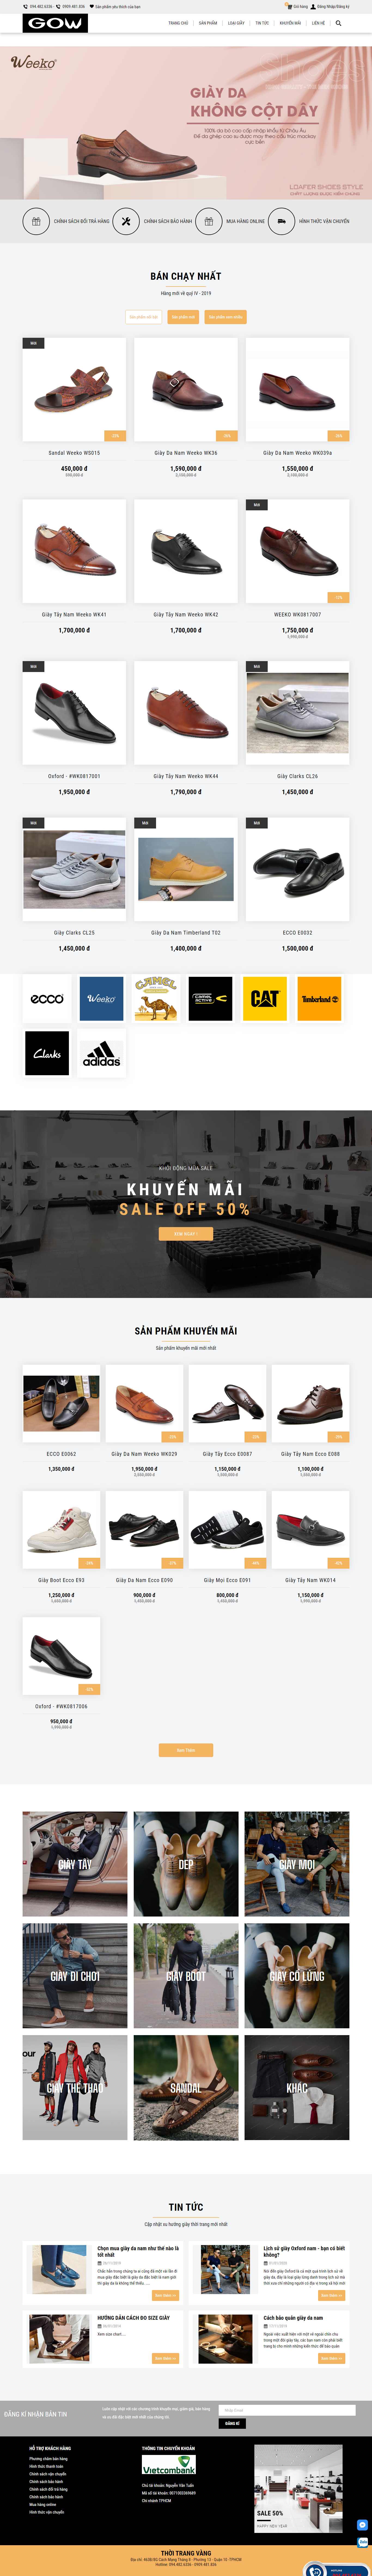 Thiết kế Website giày da - giayvnxk.com